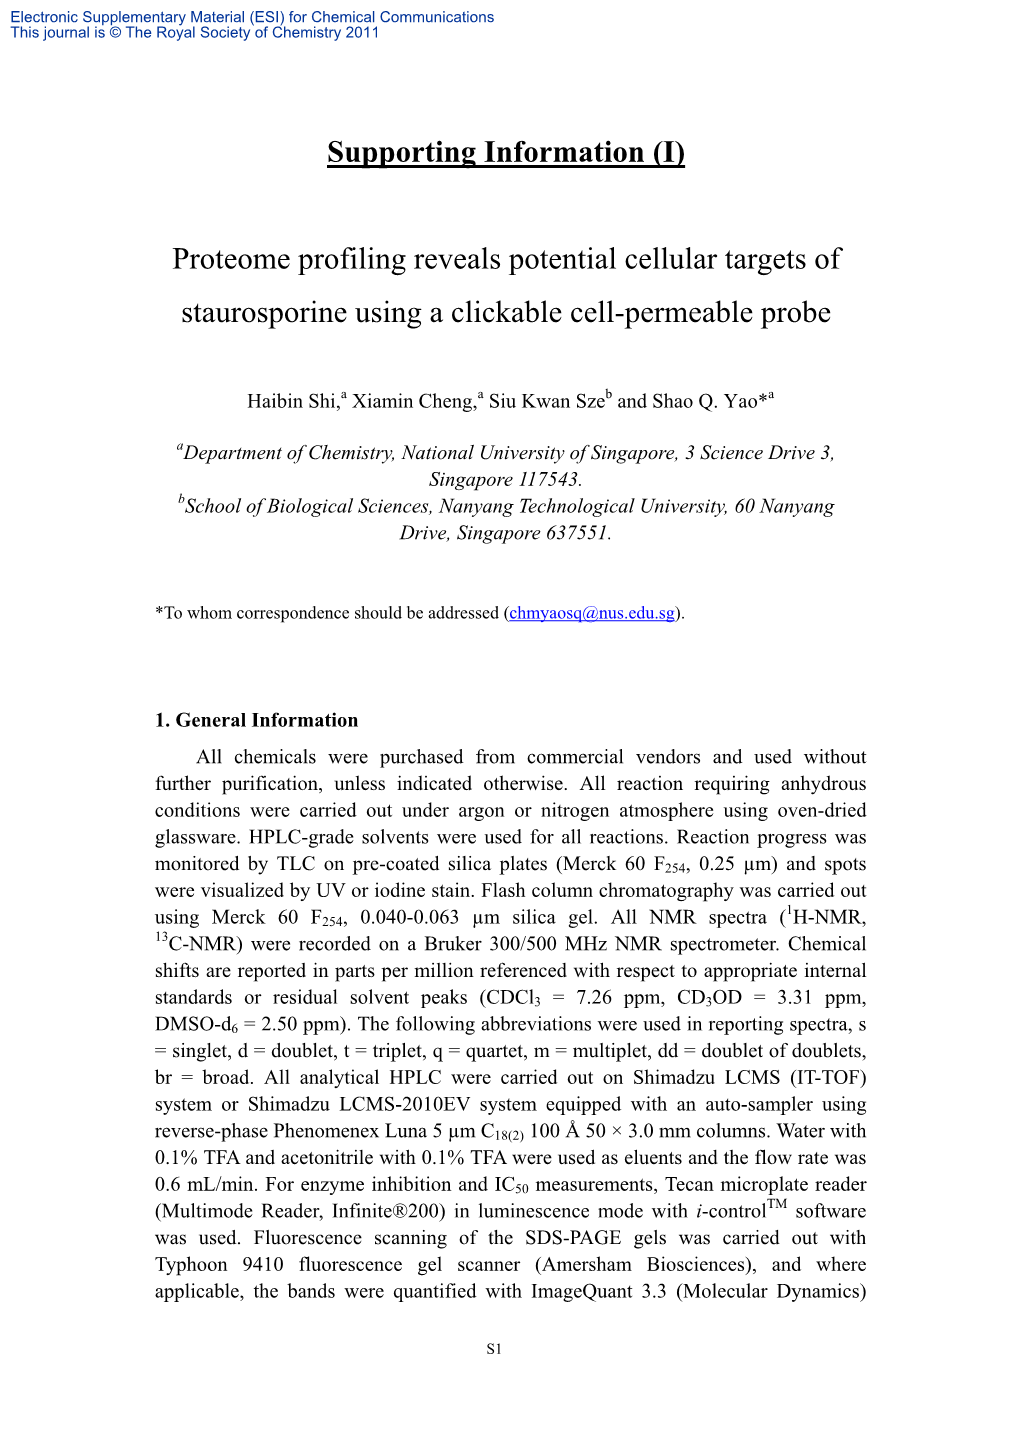 (I) Proteome Profiling Reveals Potential Cellular Targets of Staurosporine